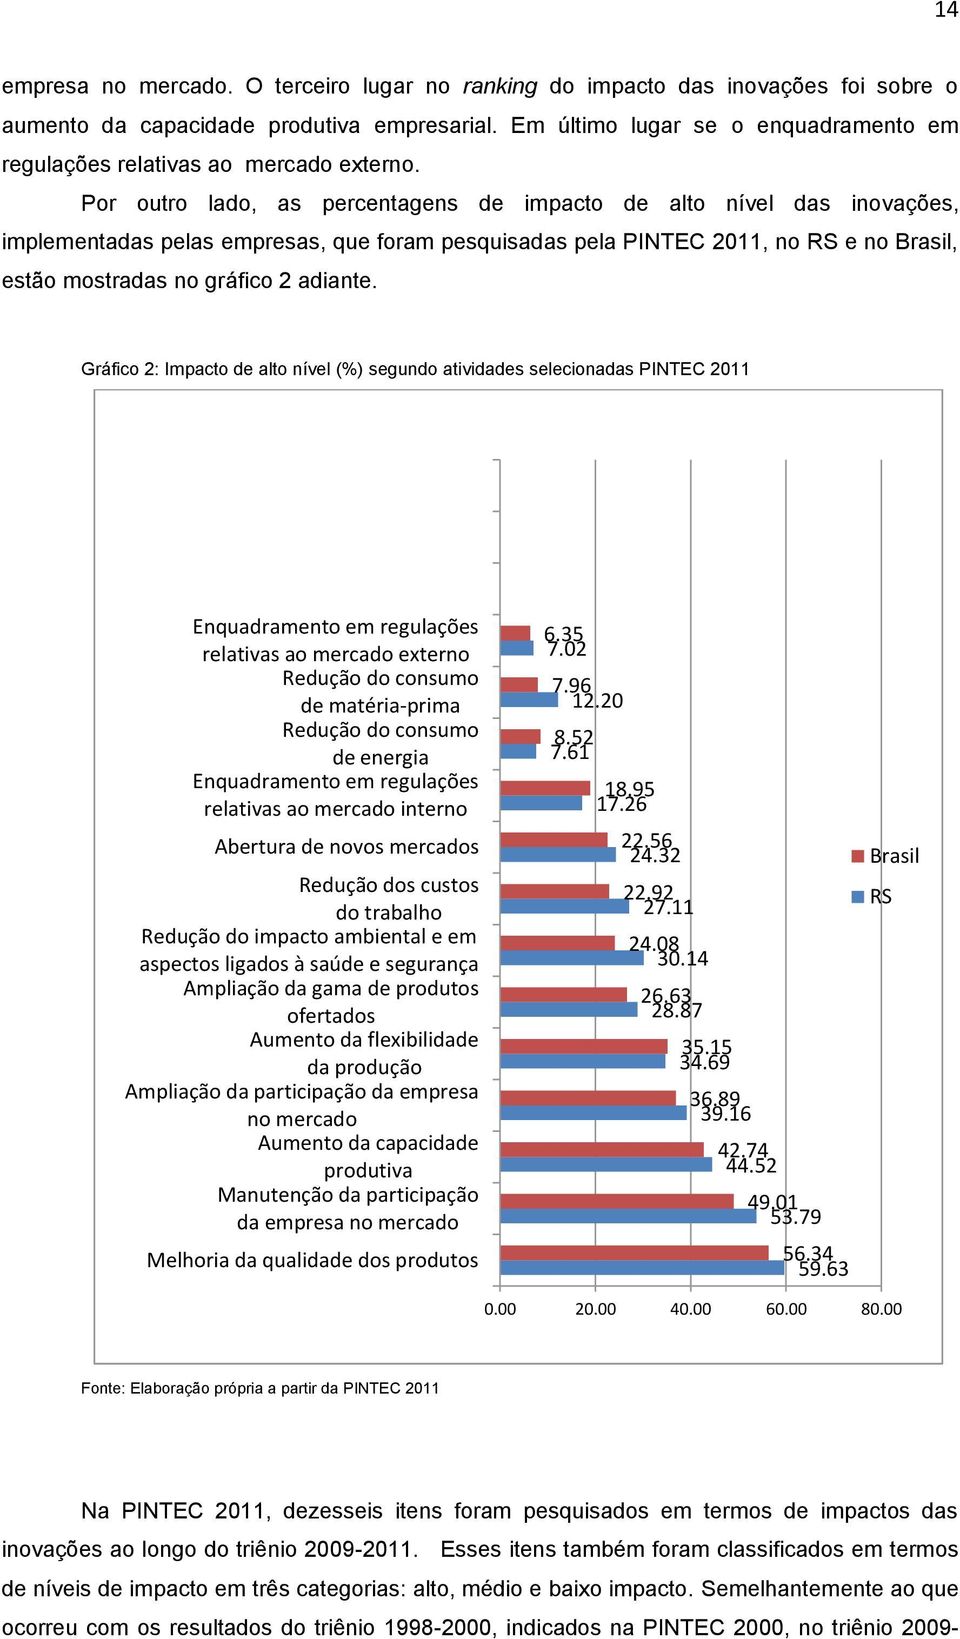 Por outro lado, as percentagens de impacto de alto nível das inovações, implementadas pelas empresas, que foram pesquisadas pela PINTEC 2011, no RS e no Brasil, estão mostradas no gráfico 2 adiante.